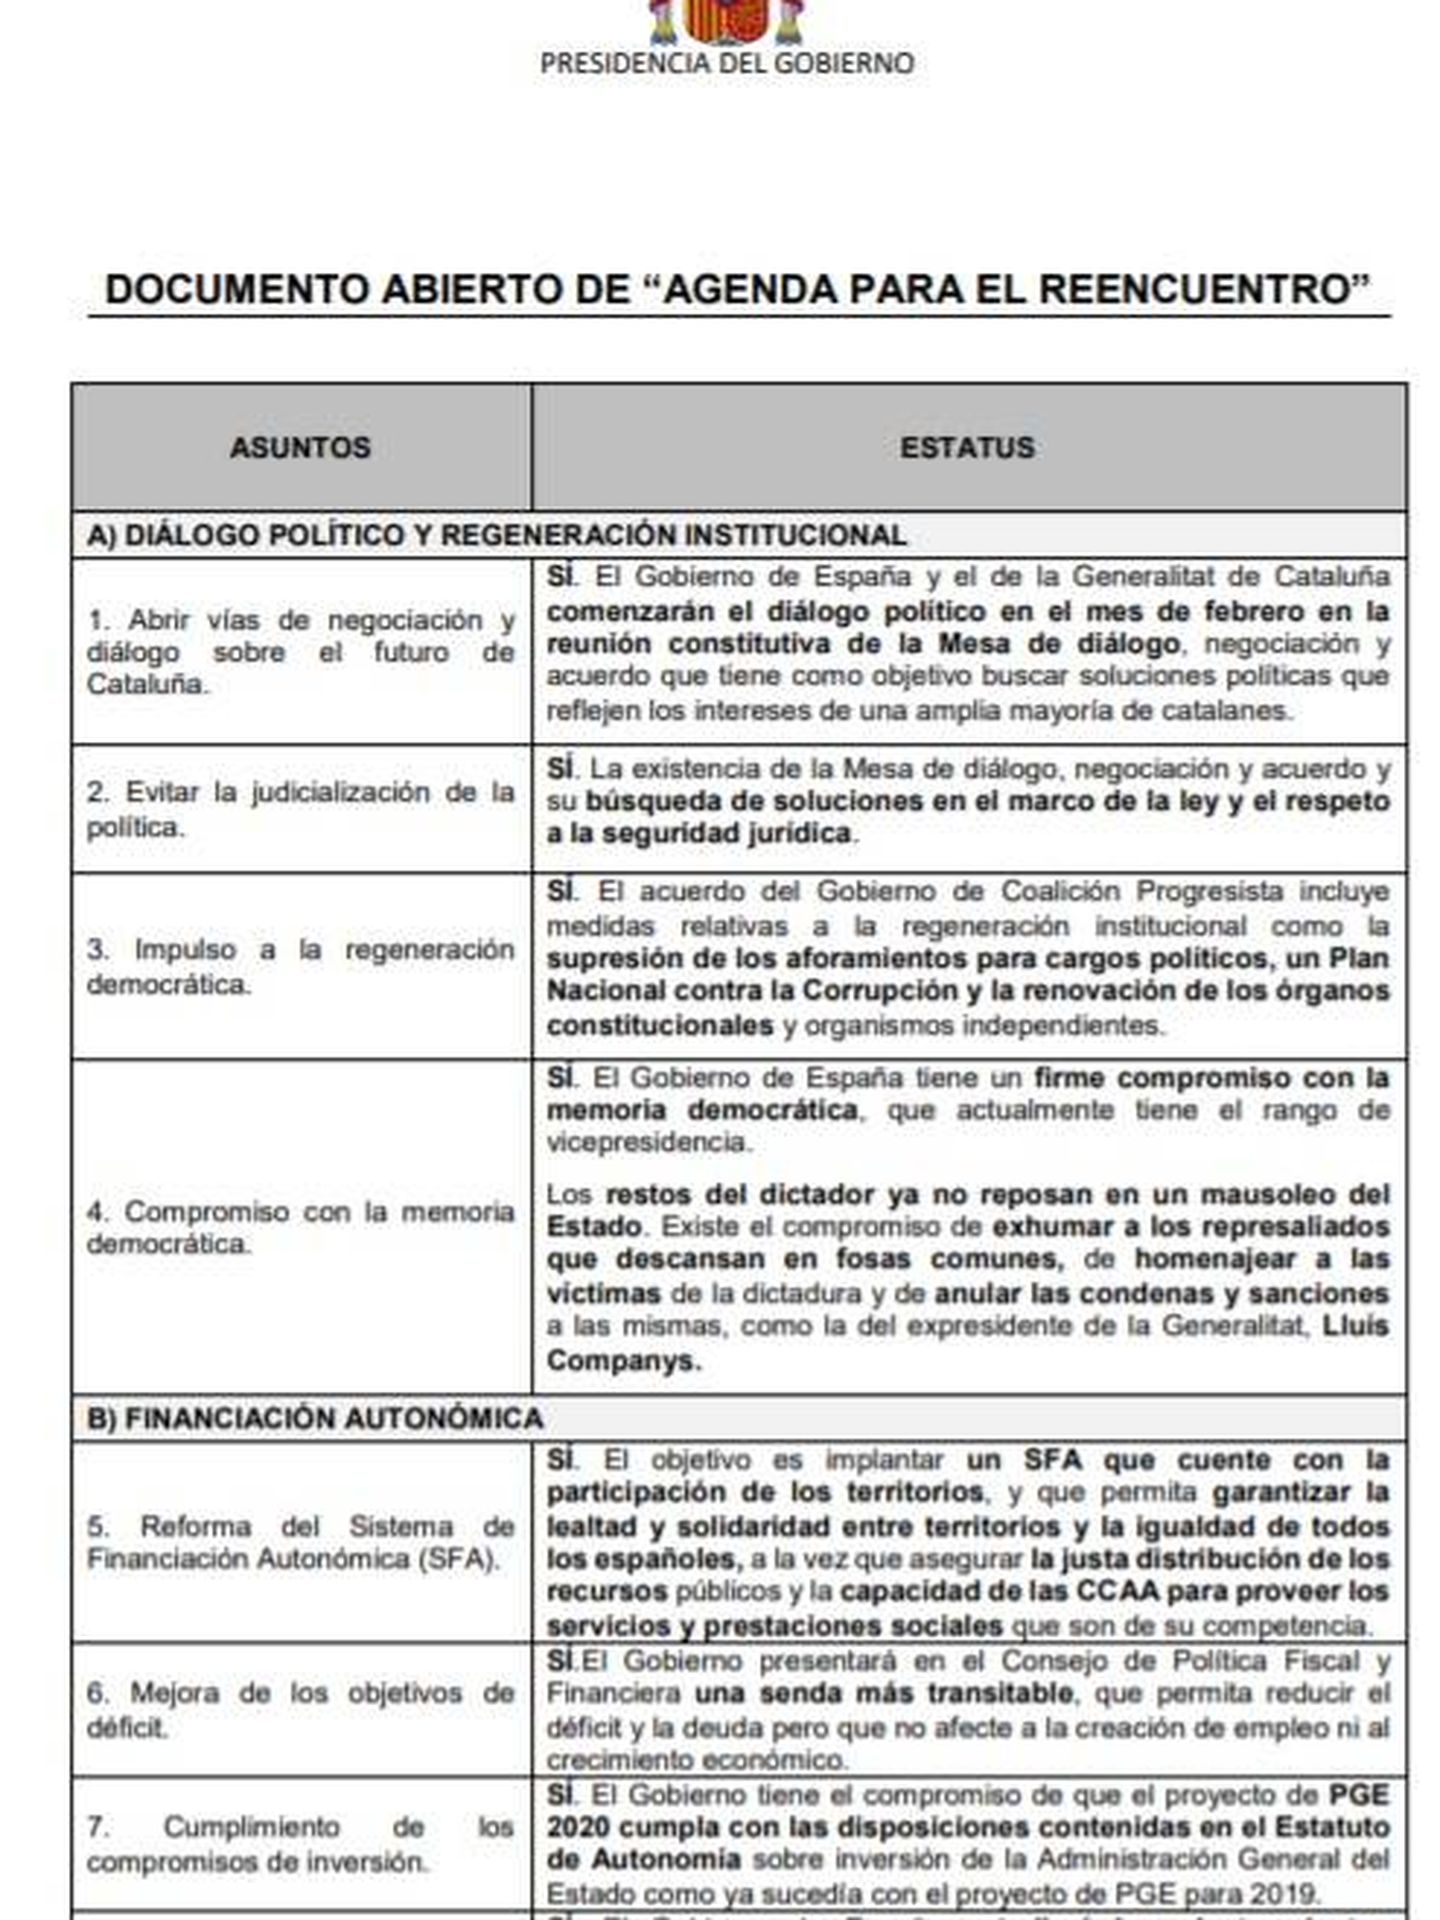 Consulte aquí en PDF la 'Agenda del reencuentro' con Cataluña propuesta por Pedro Sánchez en su reunión con Quim Torra. 